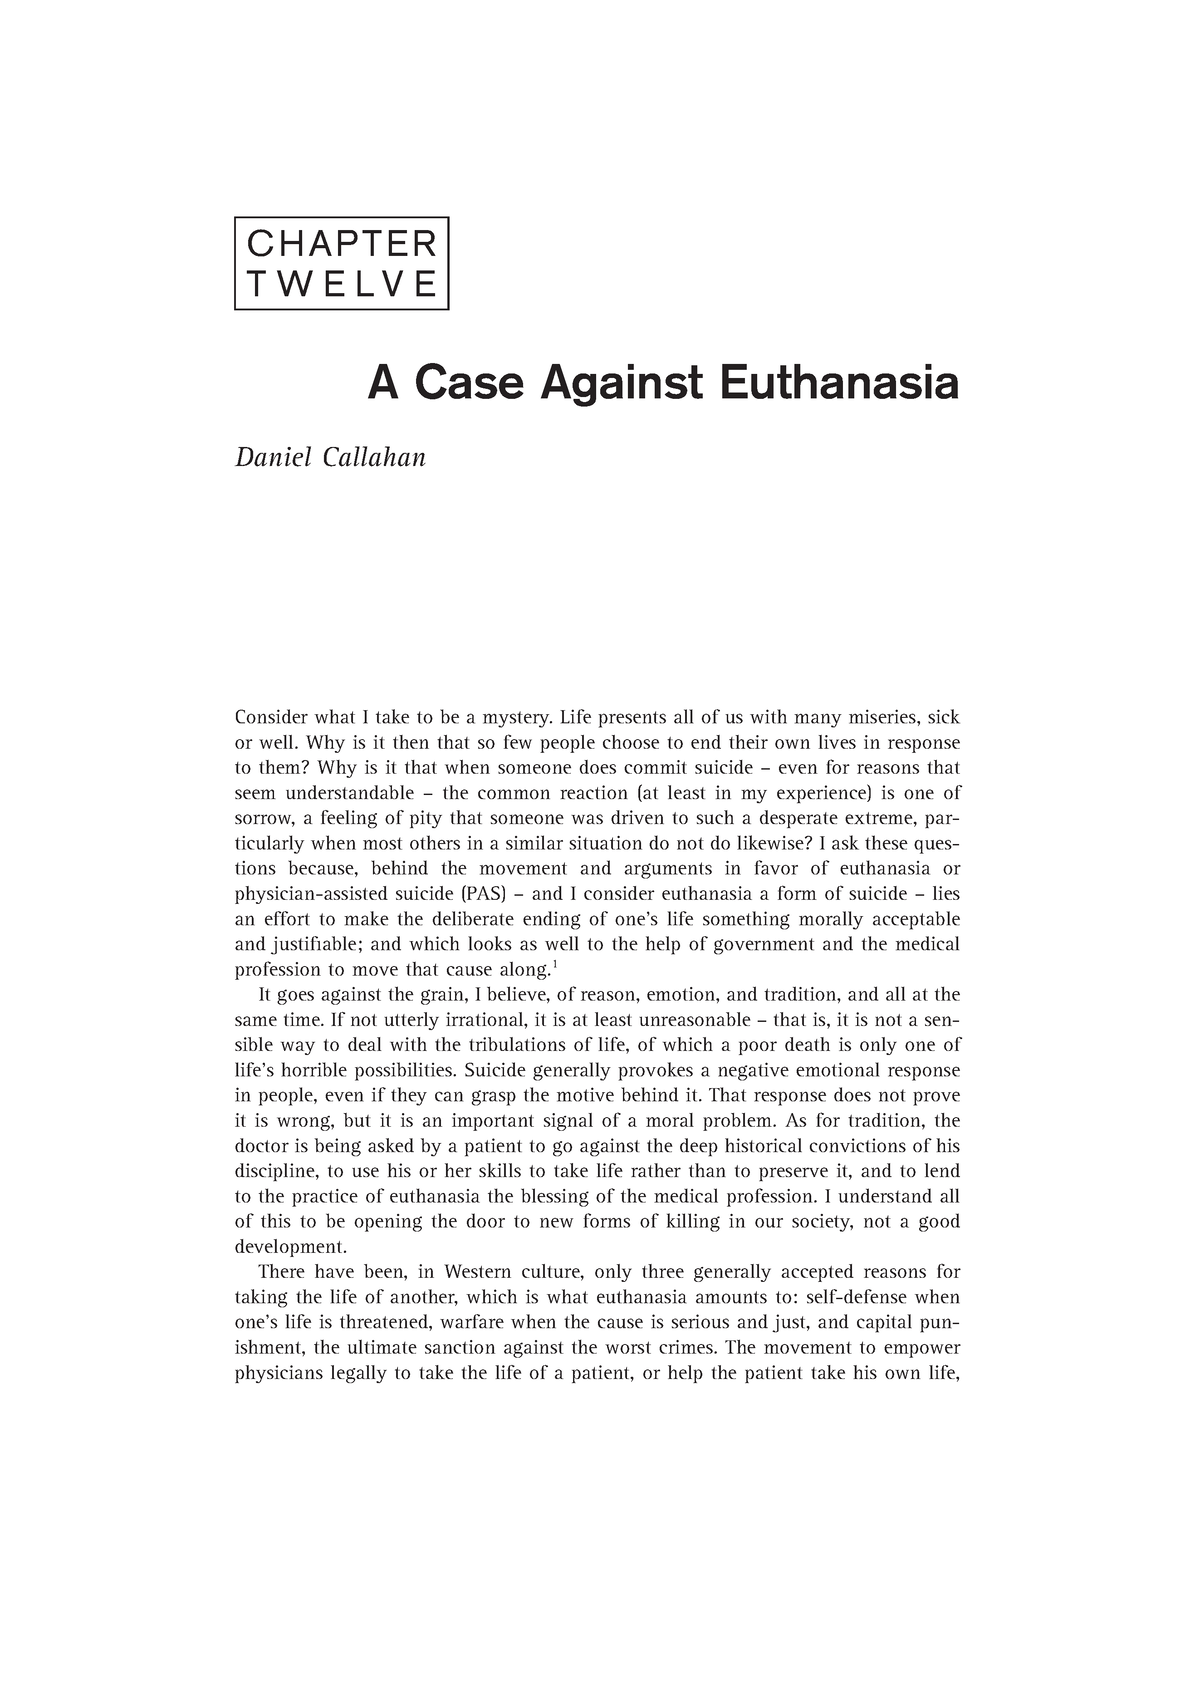 thesis against euthanasia